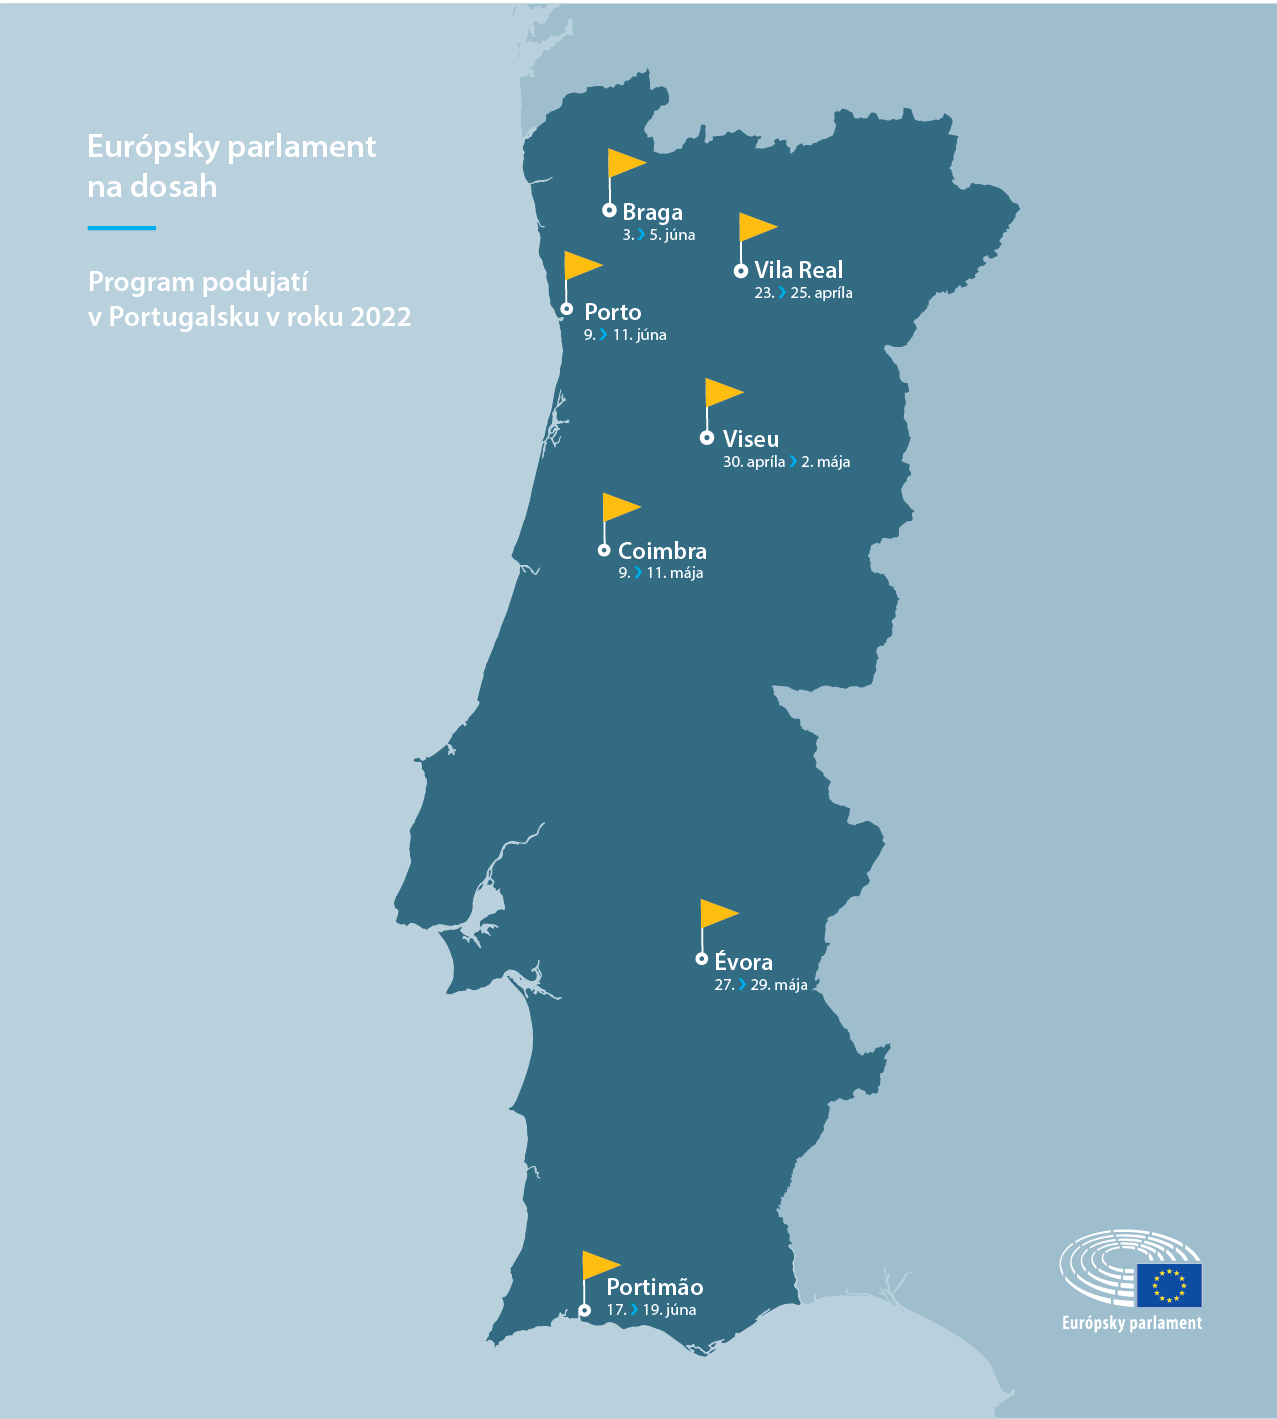 Program podujatí v Portugalsku v roku 2022